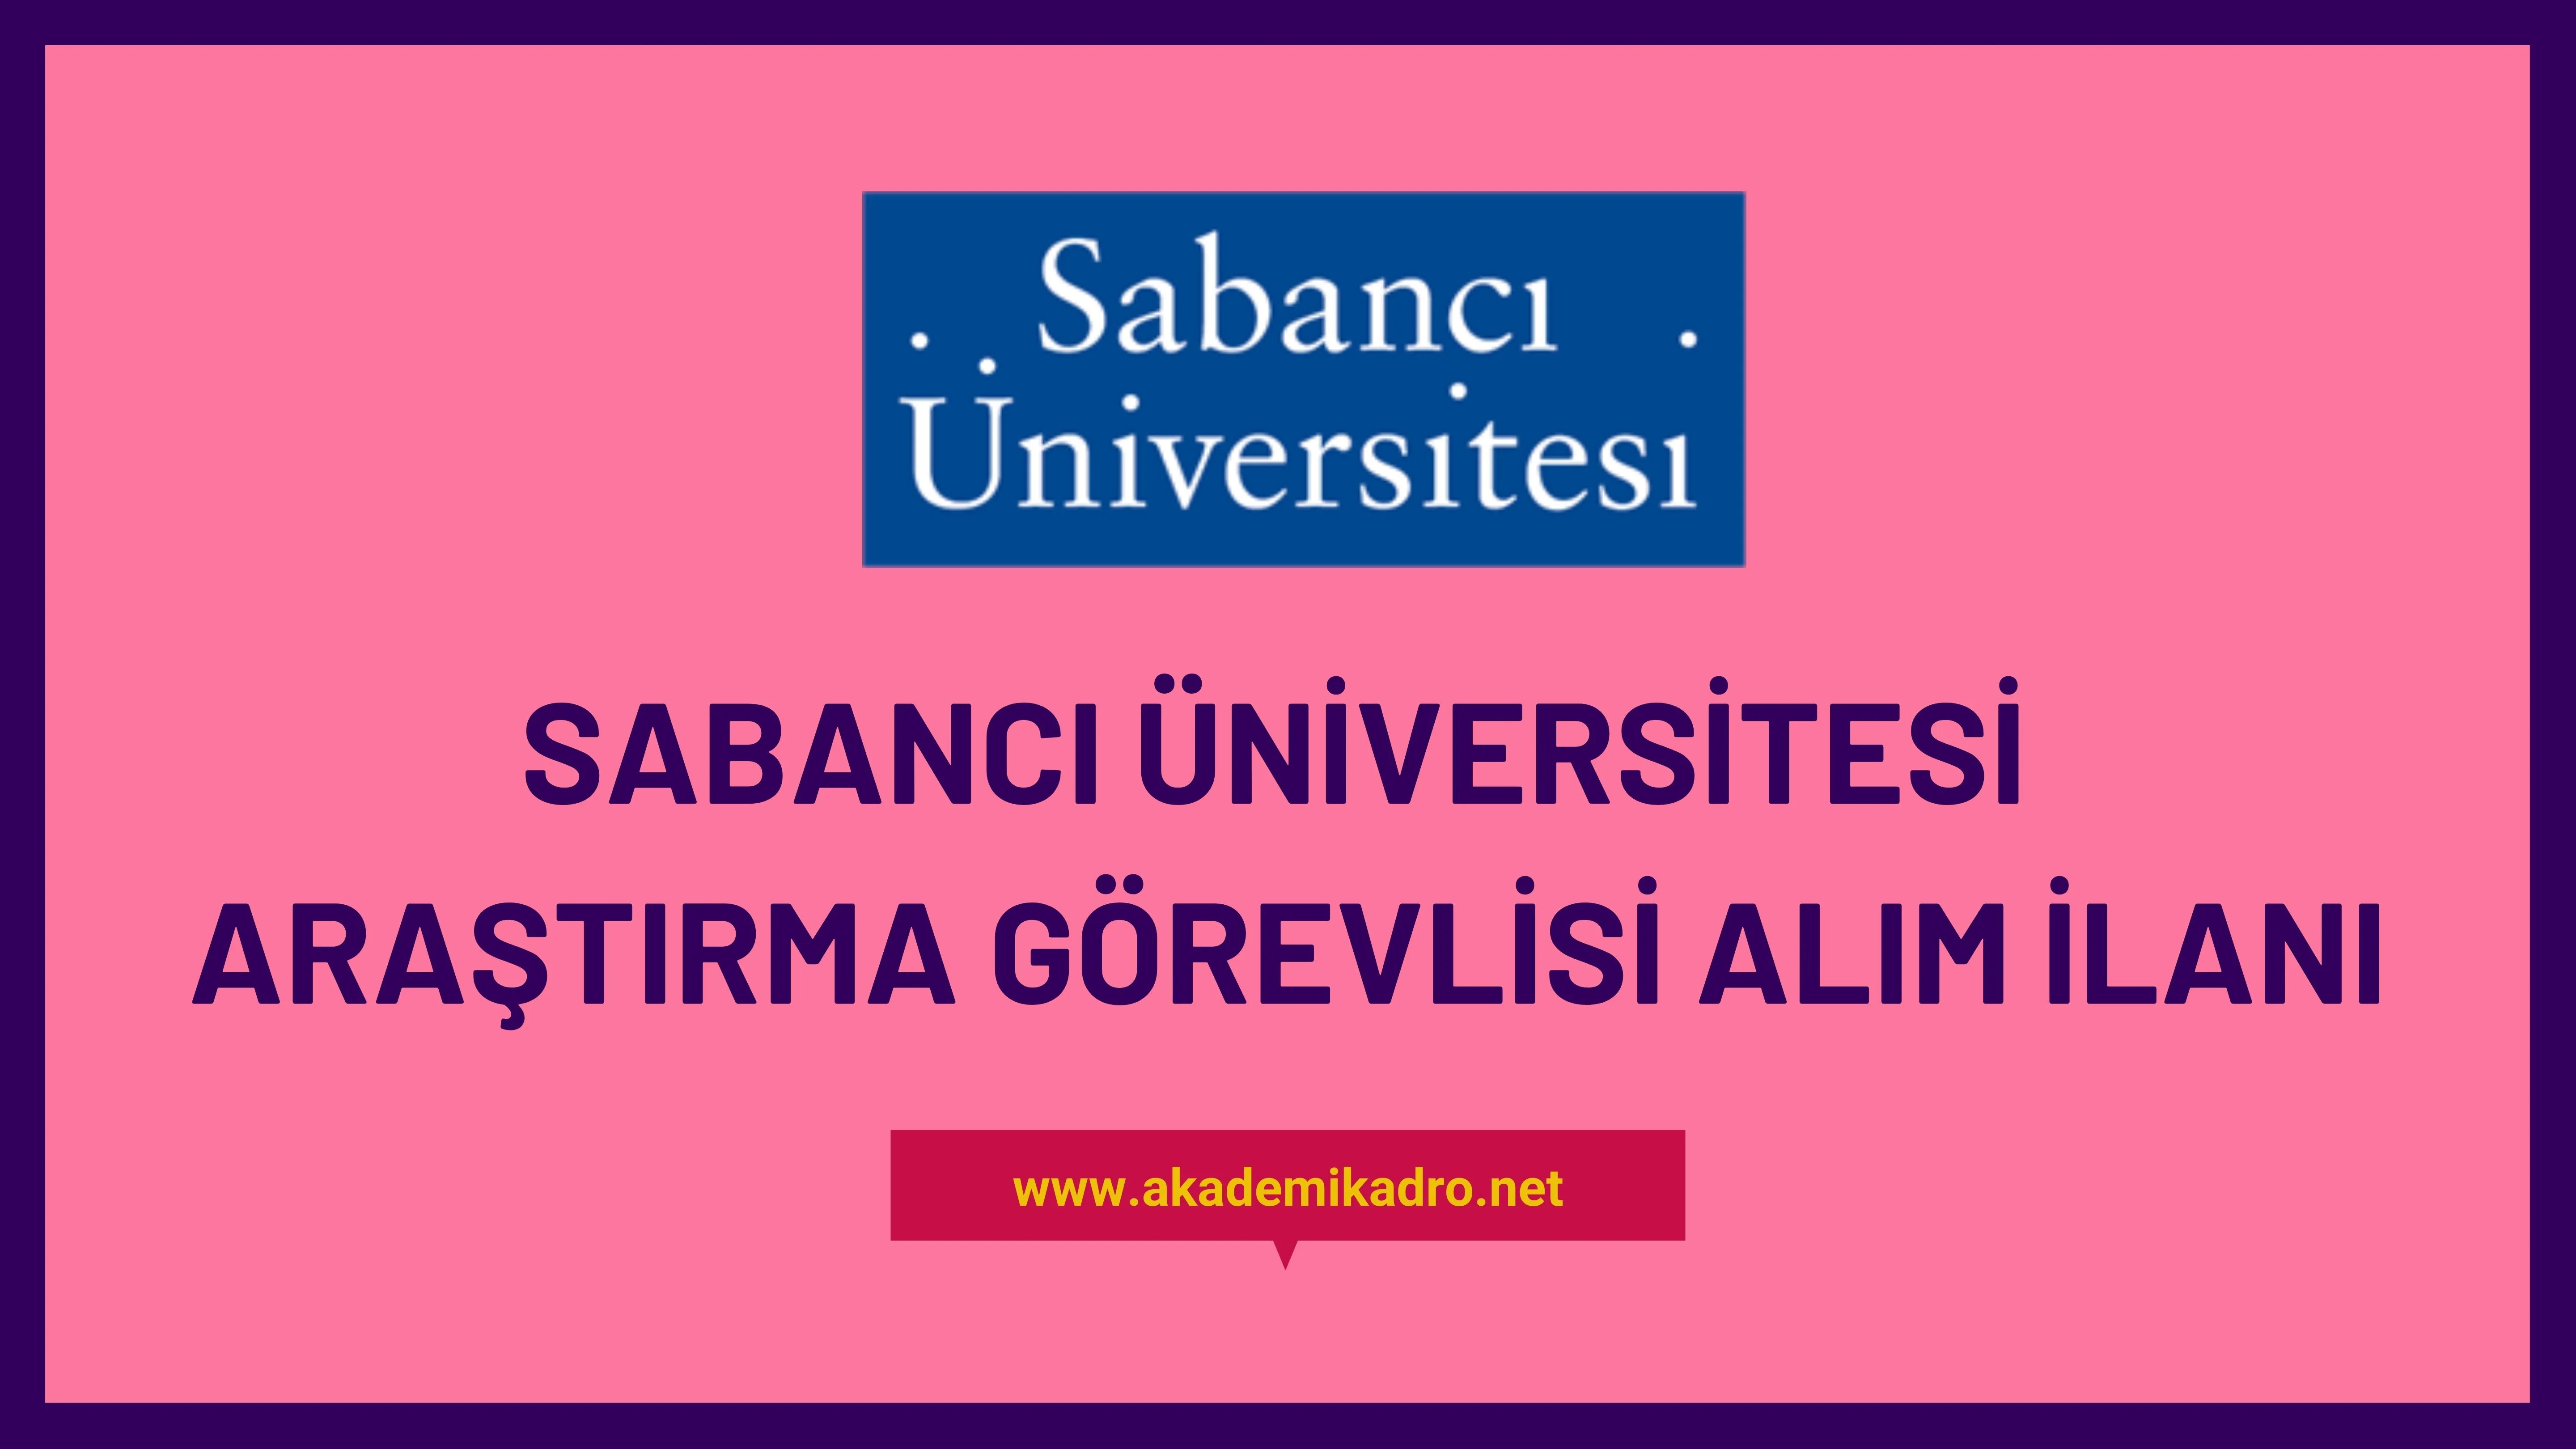 Sabancı Üniversitesi Araştırma görevlisi alacak. Son başvuru tarihi 23 Ocak 2023.